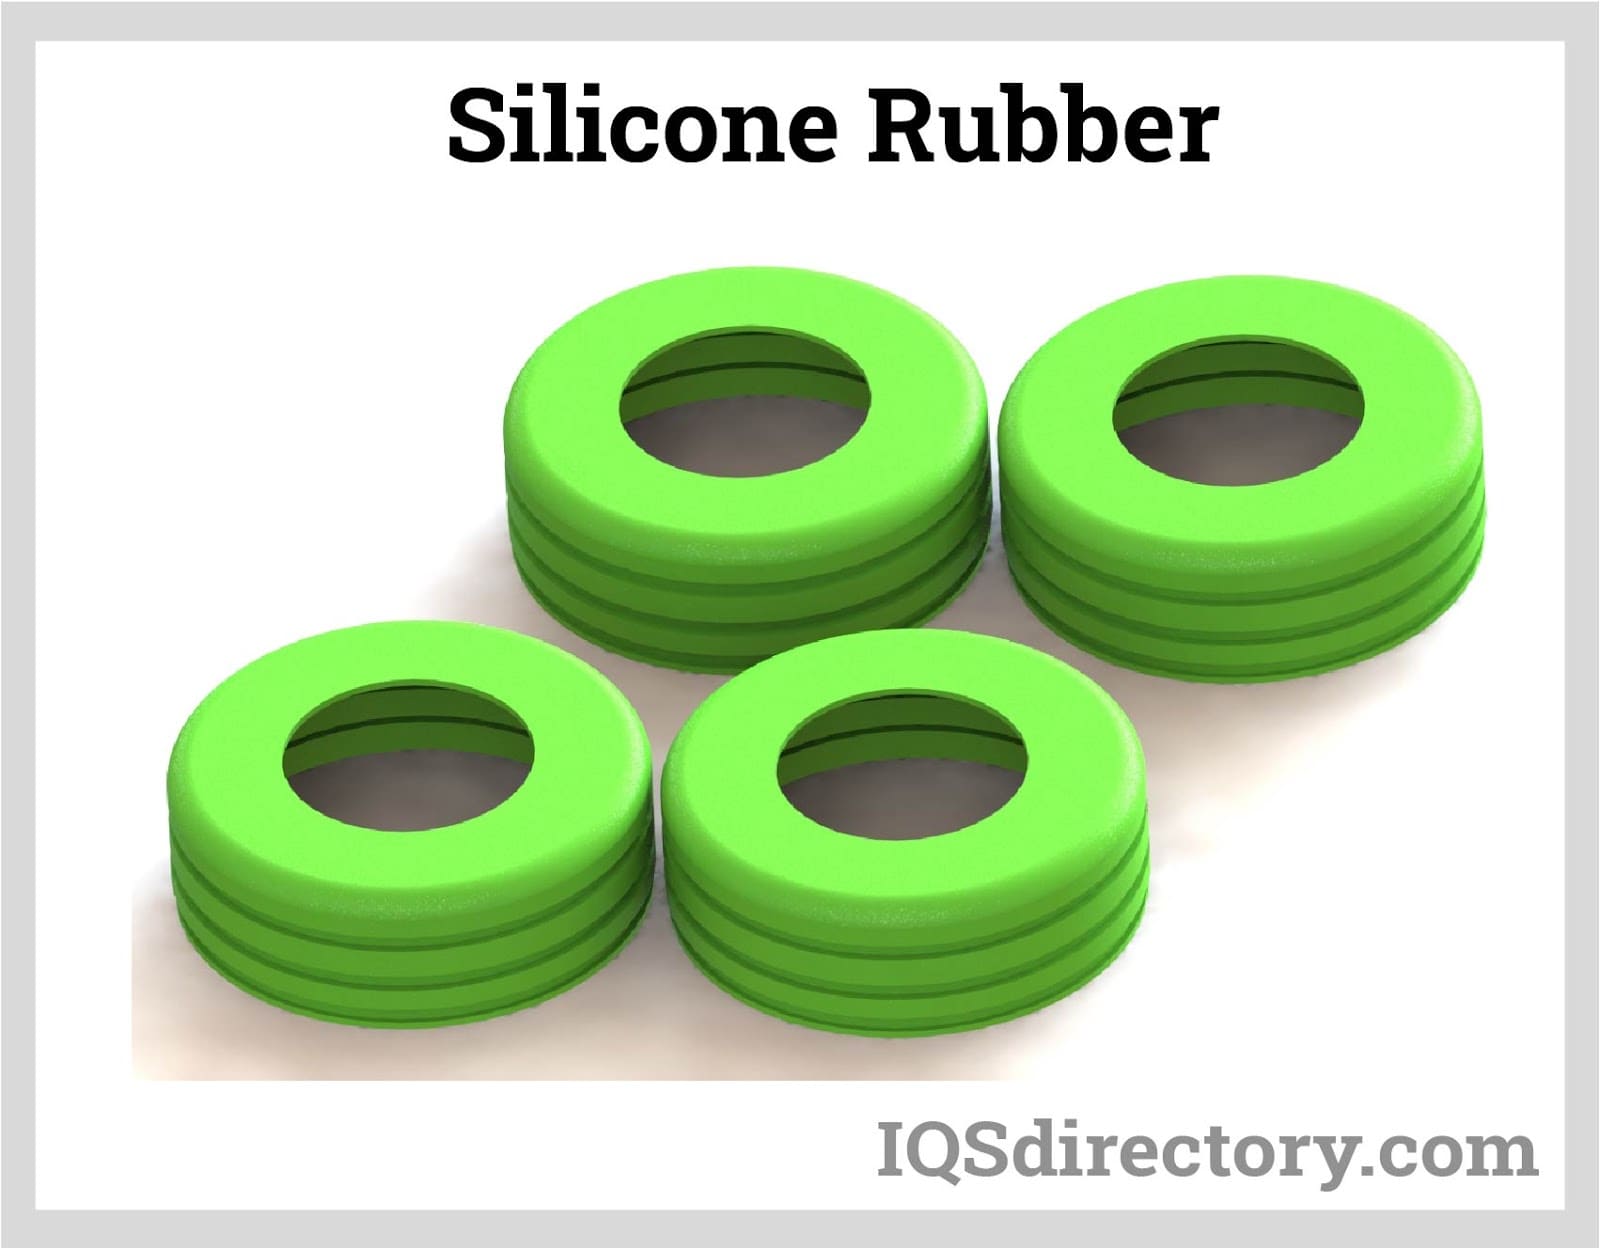 Silicone Rubber